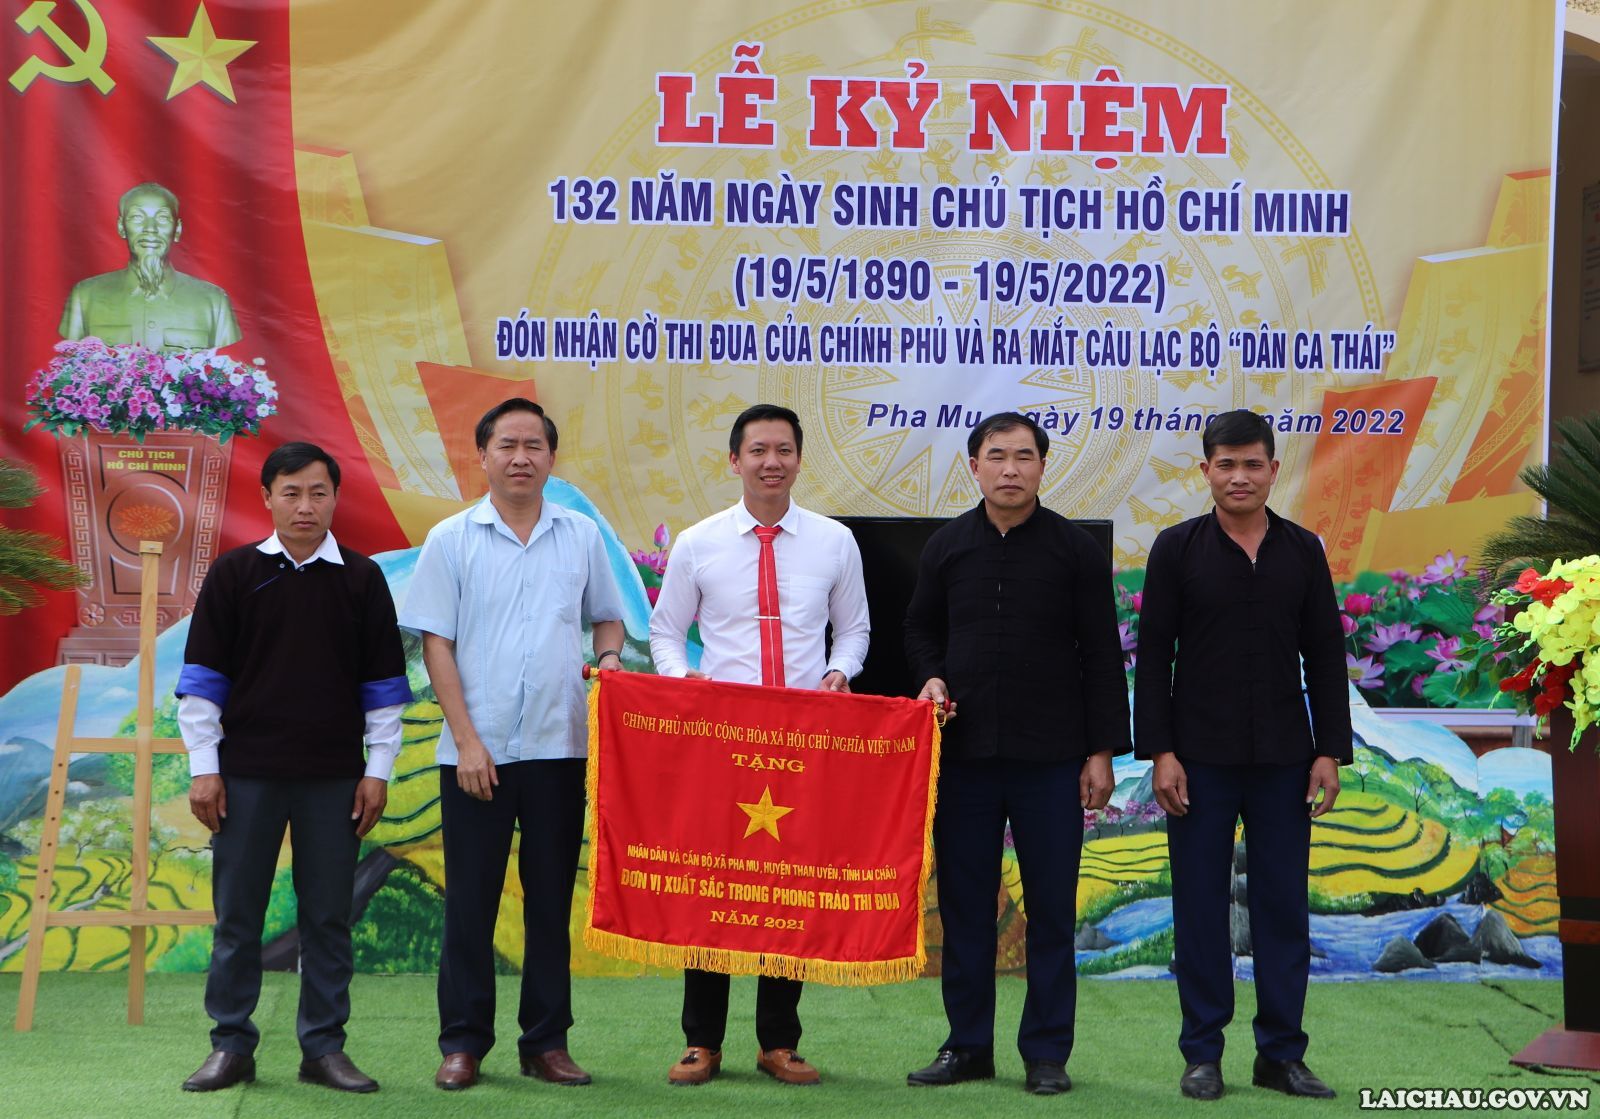 Kỷ niệm 132 năm Ngày sinh Chủ tịch Hồ Chí Minh, đón nhận Cờ thi đua của Chính phủ và ra mắt câu lạc bộ “Dân ca Thái”